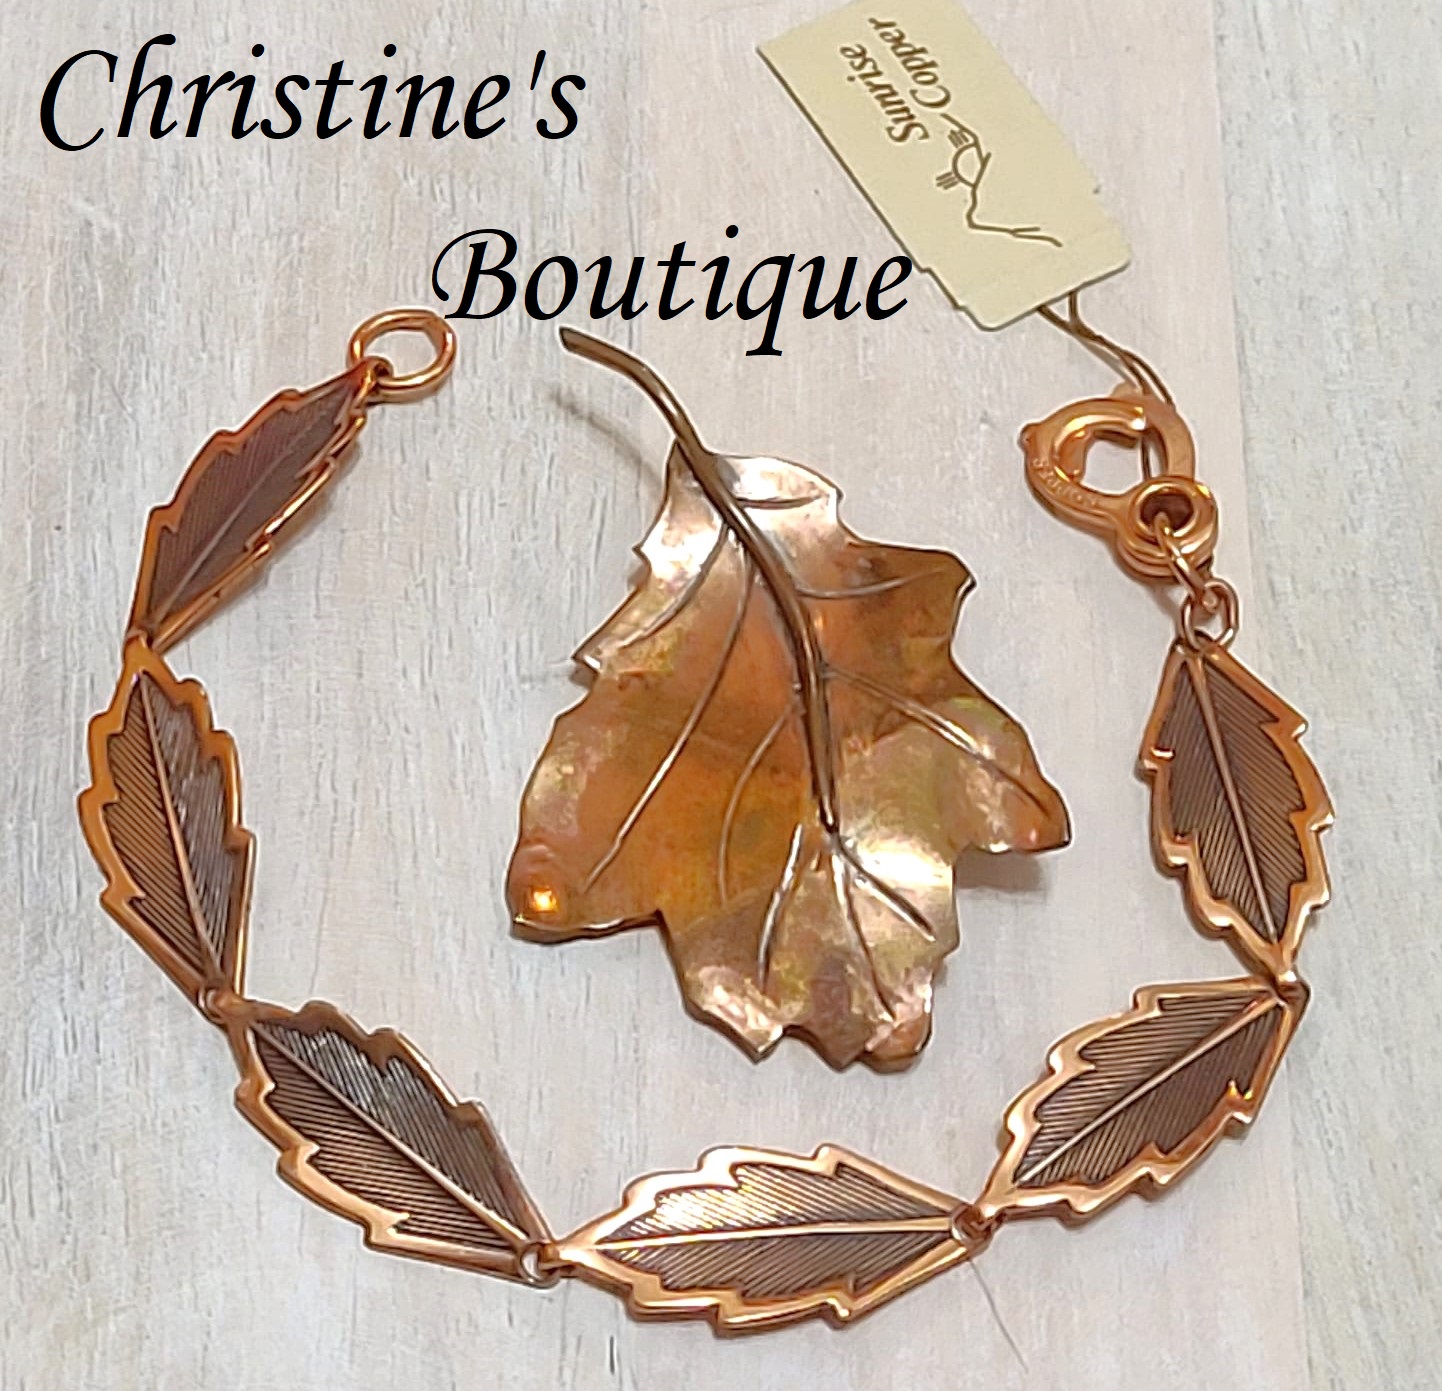 Copper leaf bracelet with matching copper maple leaf pin, vintage set, original tag